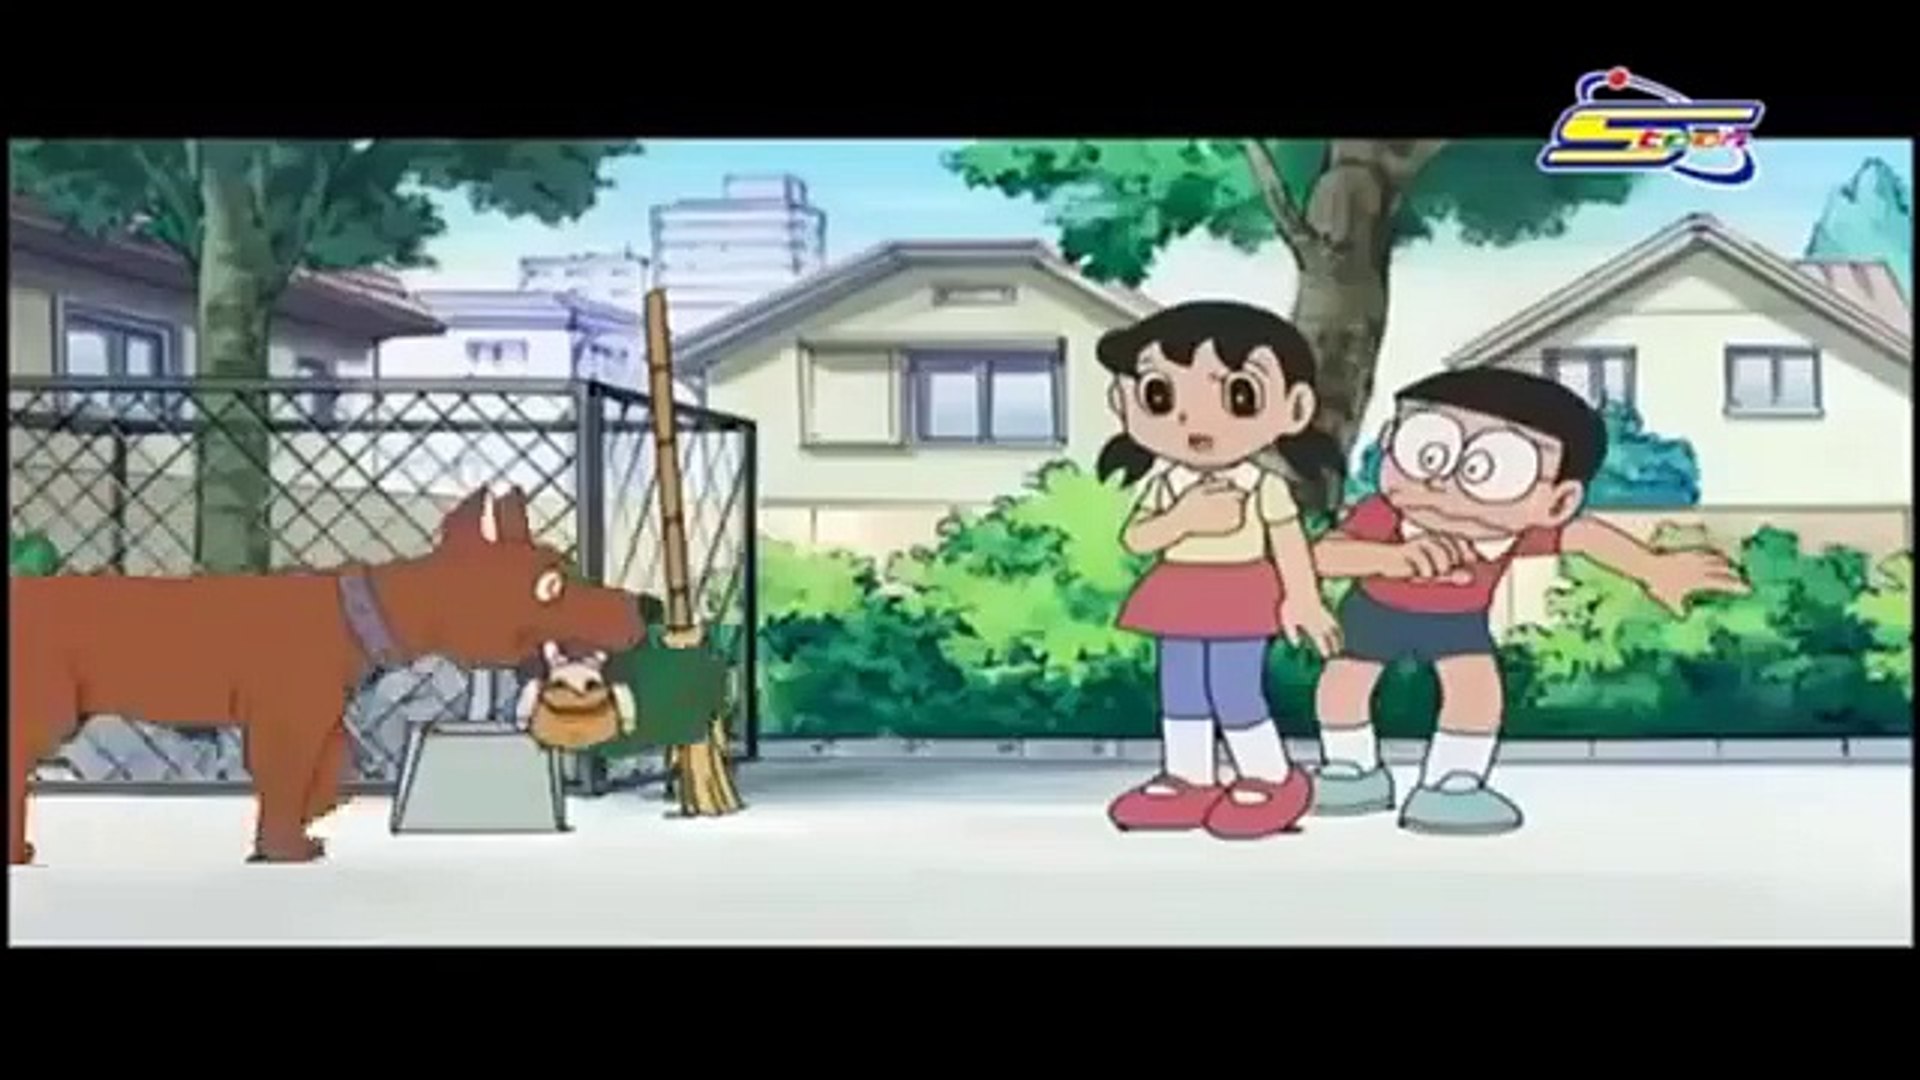 دورايمون "دورايمون في كل مكان" حلقة جديدة مدبلجة Doraemon - Vidéo  Dailymotion